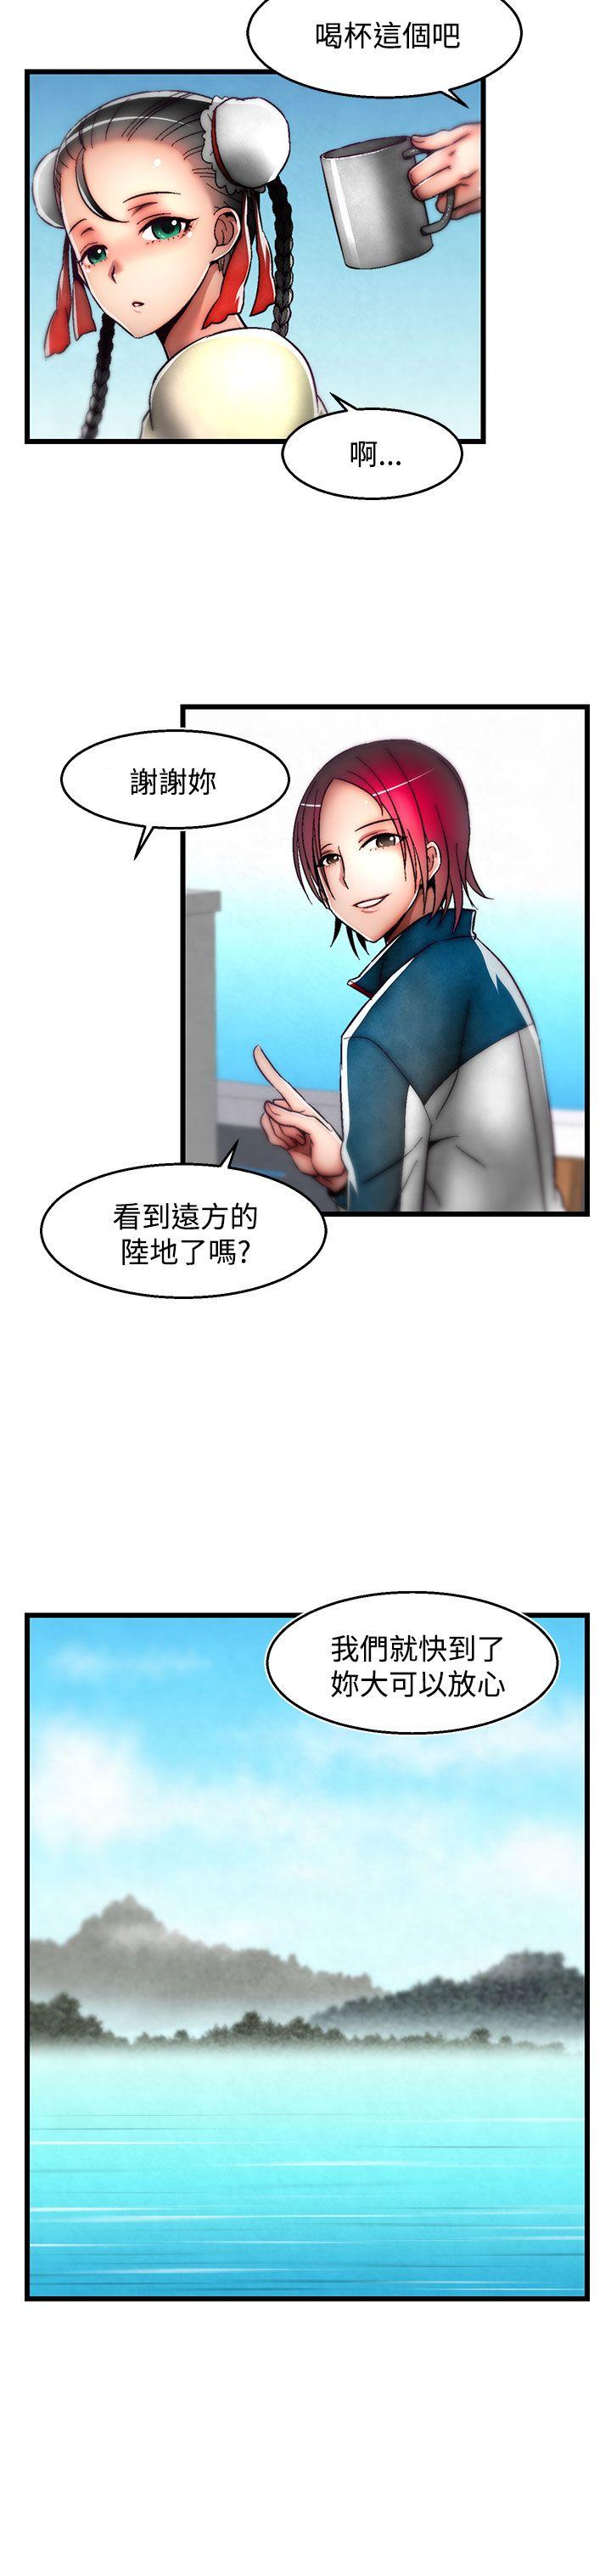 韩国污漫画 啪啪啪調教所 第2季最终话 24